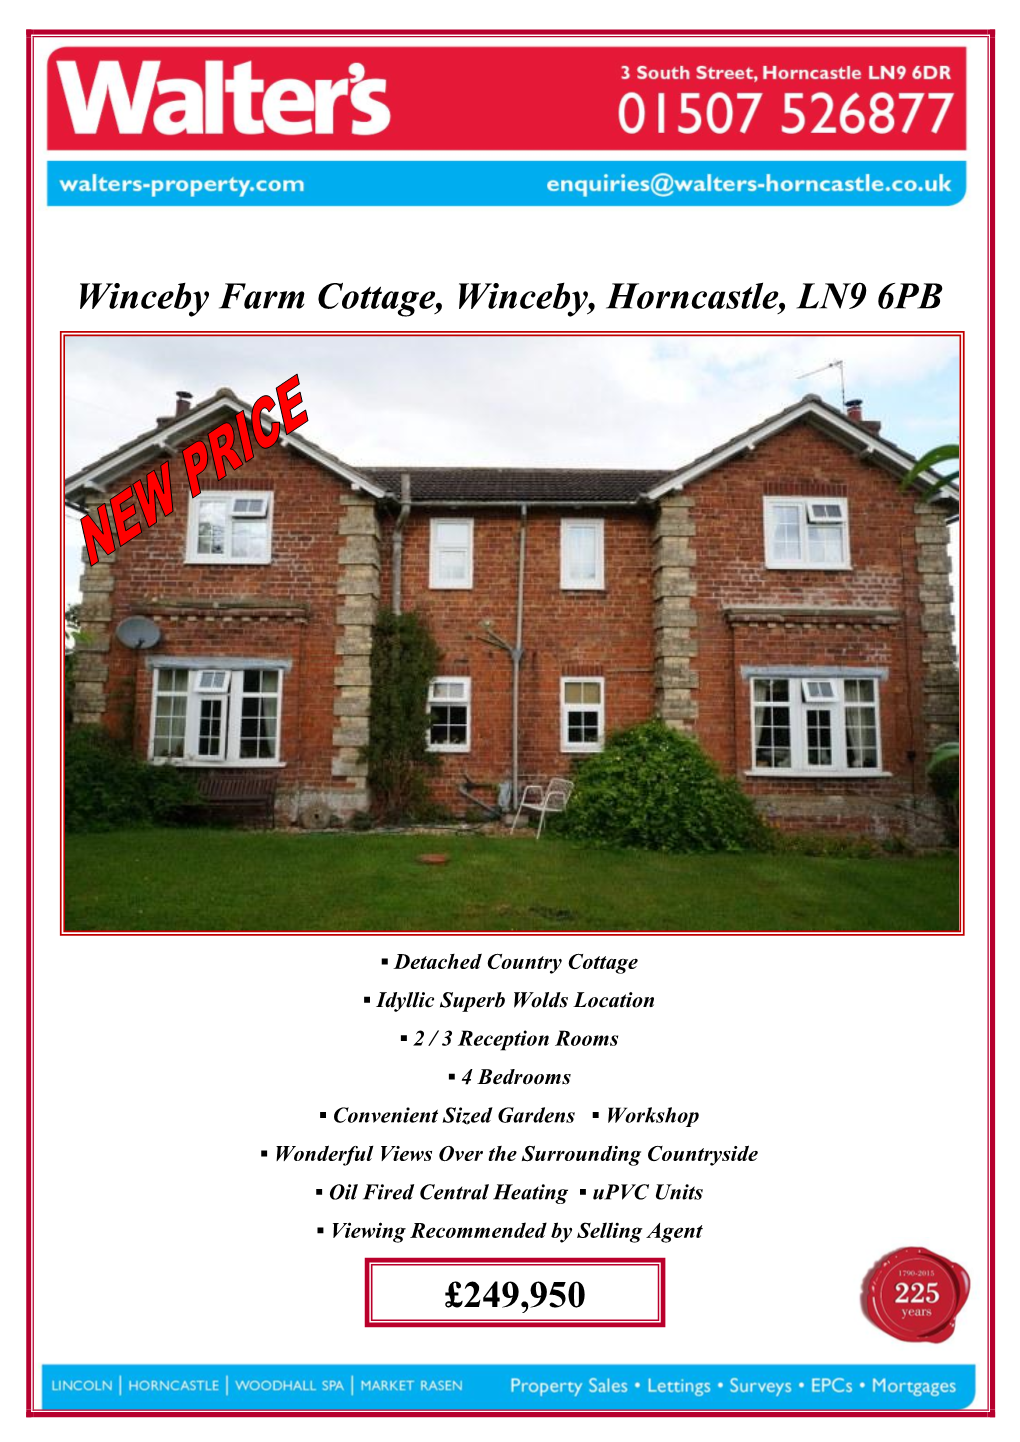 Winceby Farm Cottage, Winceby, Horncastle, LN9 6PB £249,950